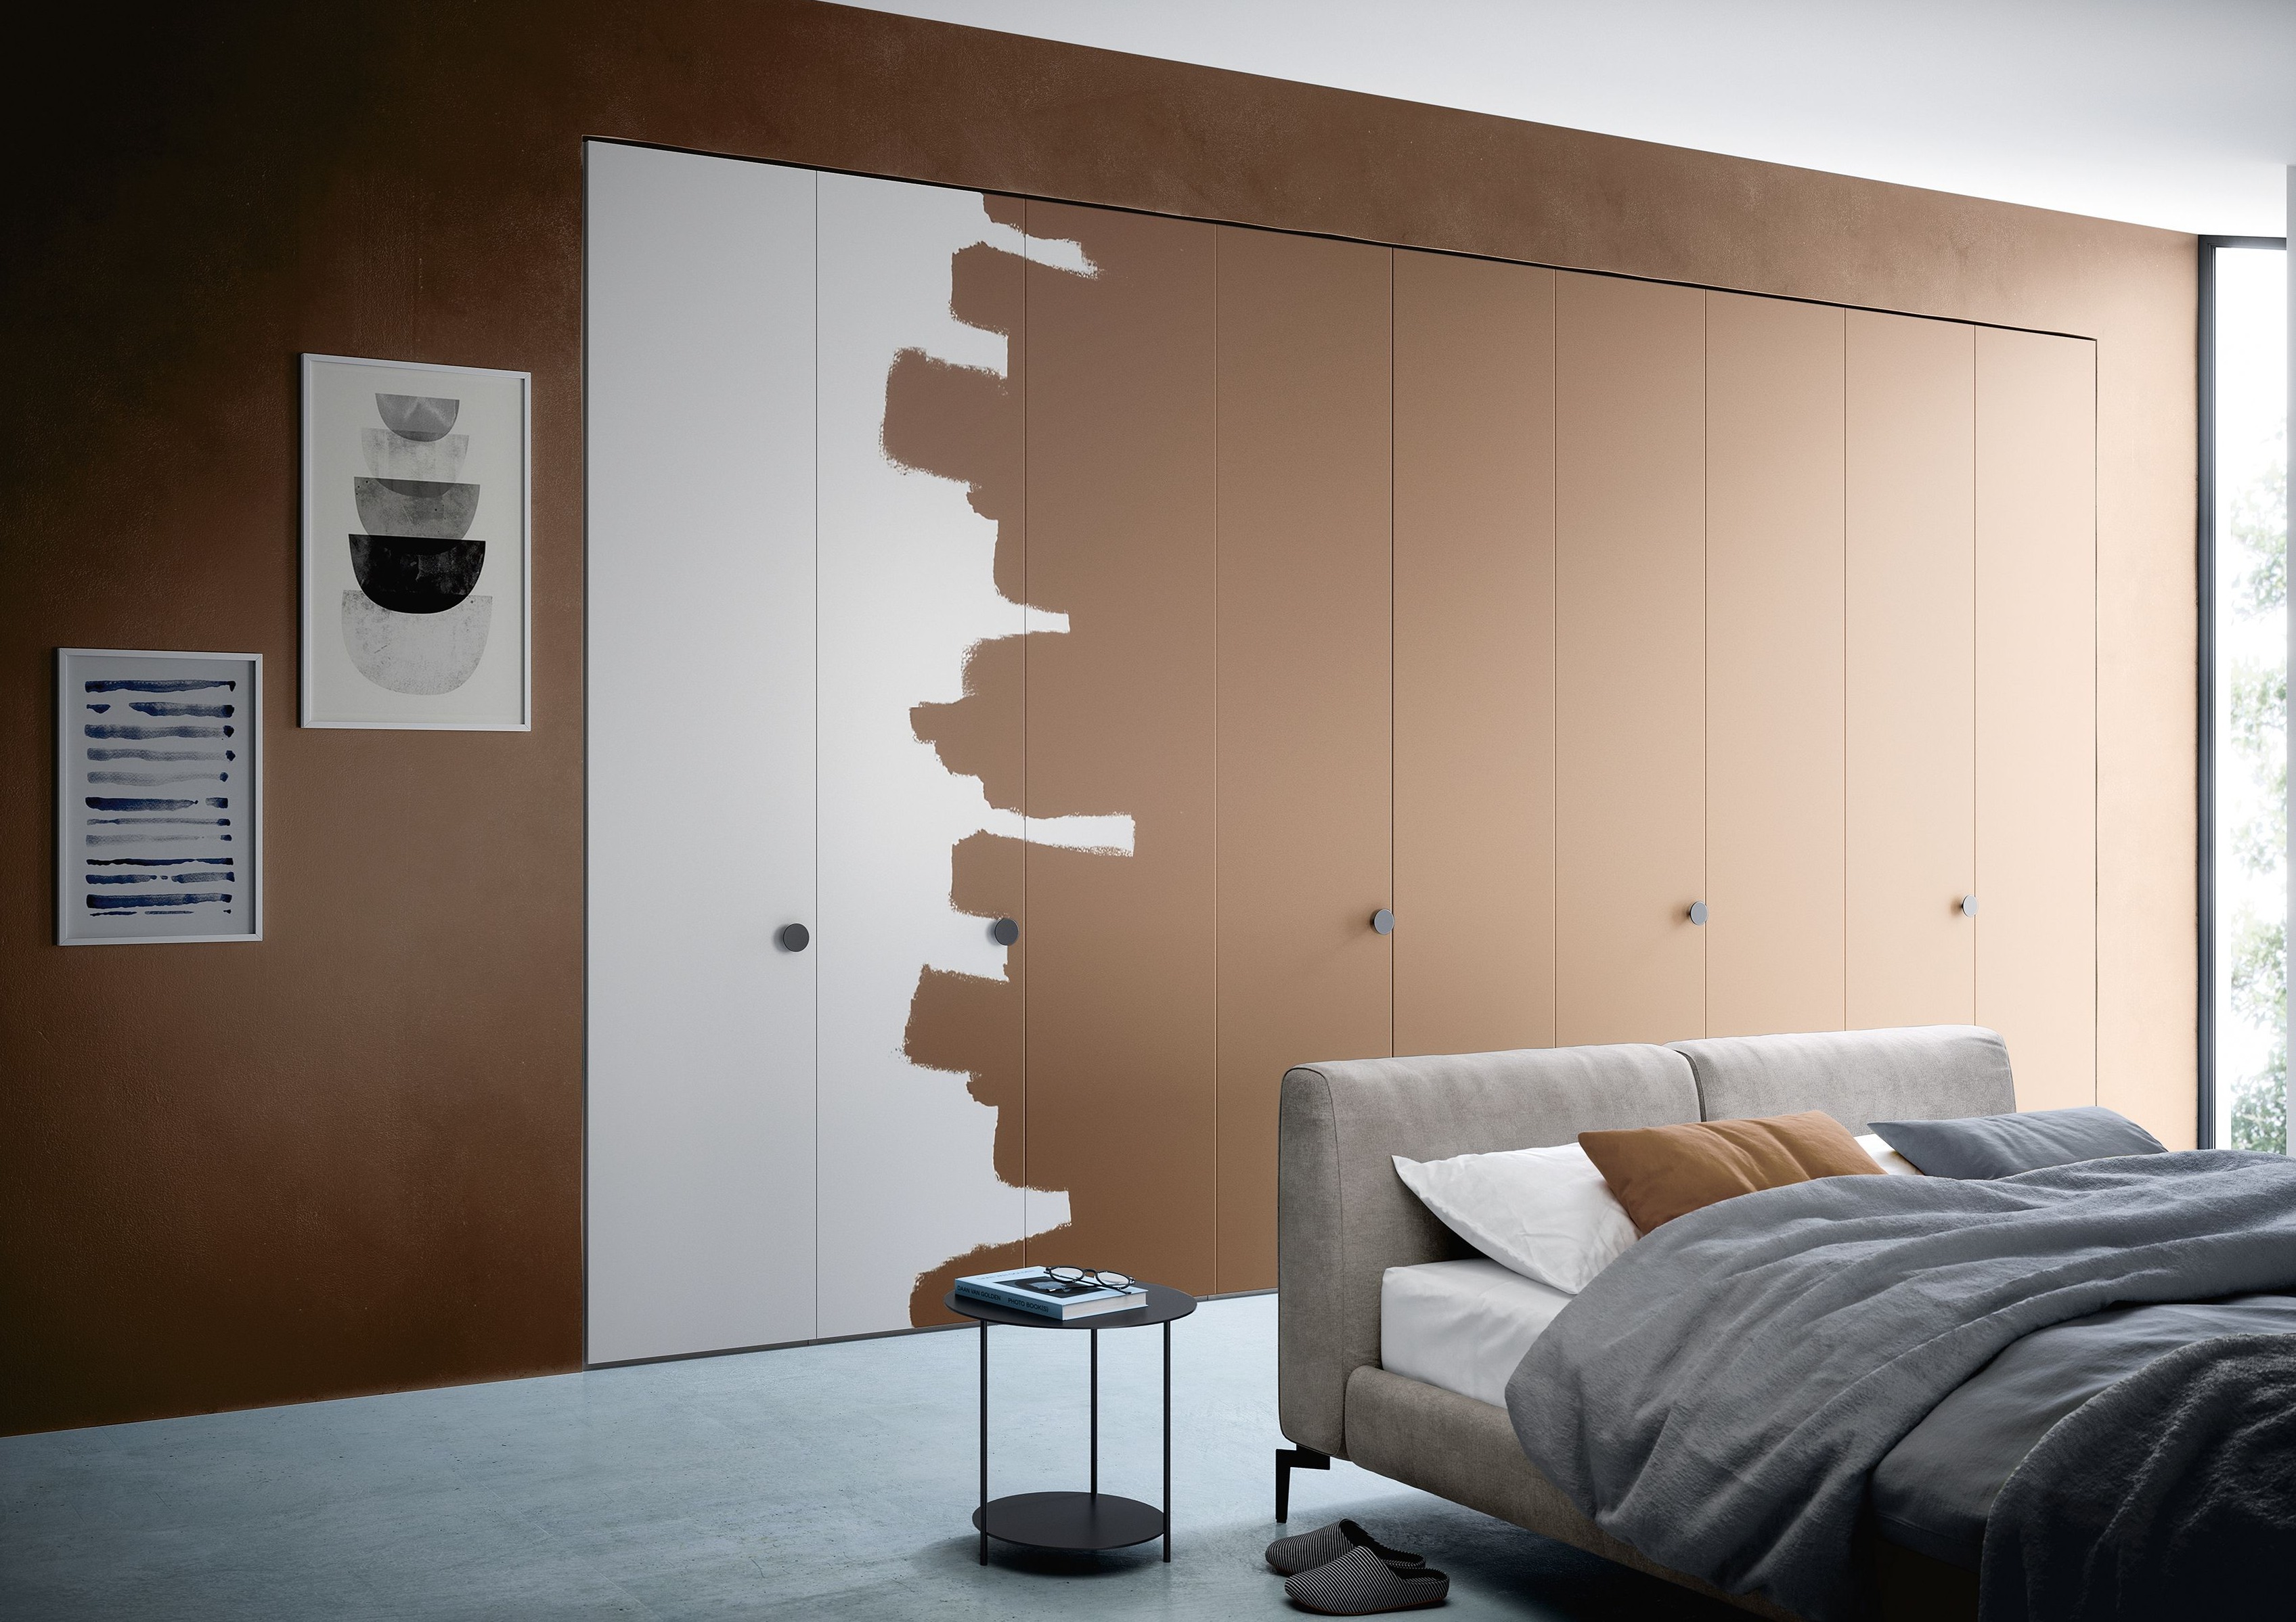 Colore delle pareti in camera da letto: come sceglierlo valorizzando gli spazi